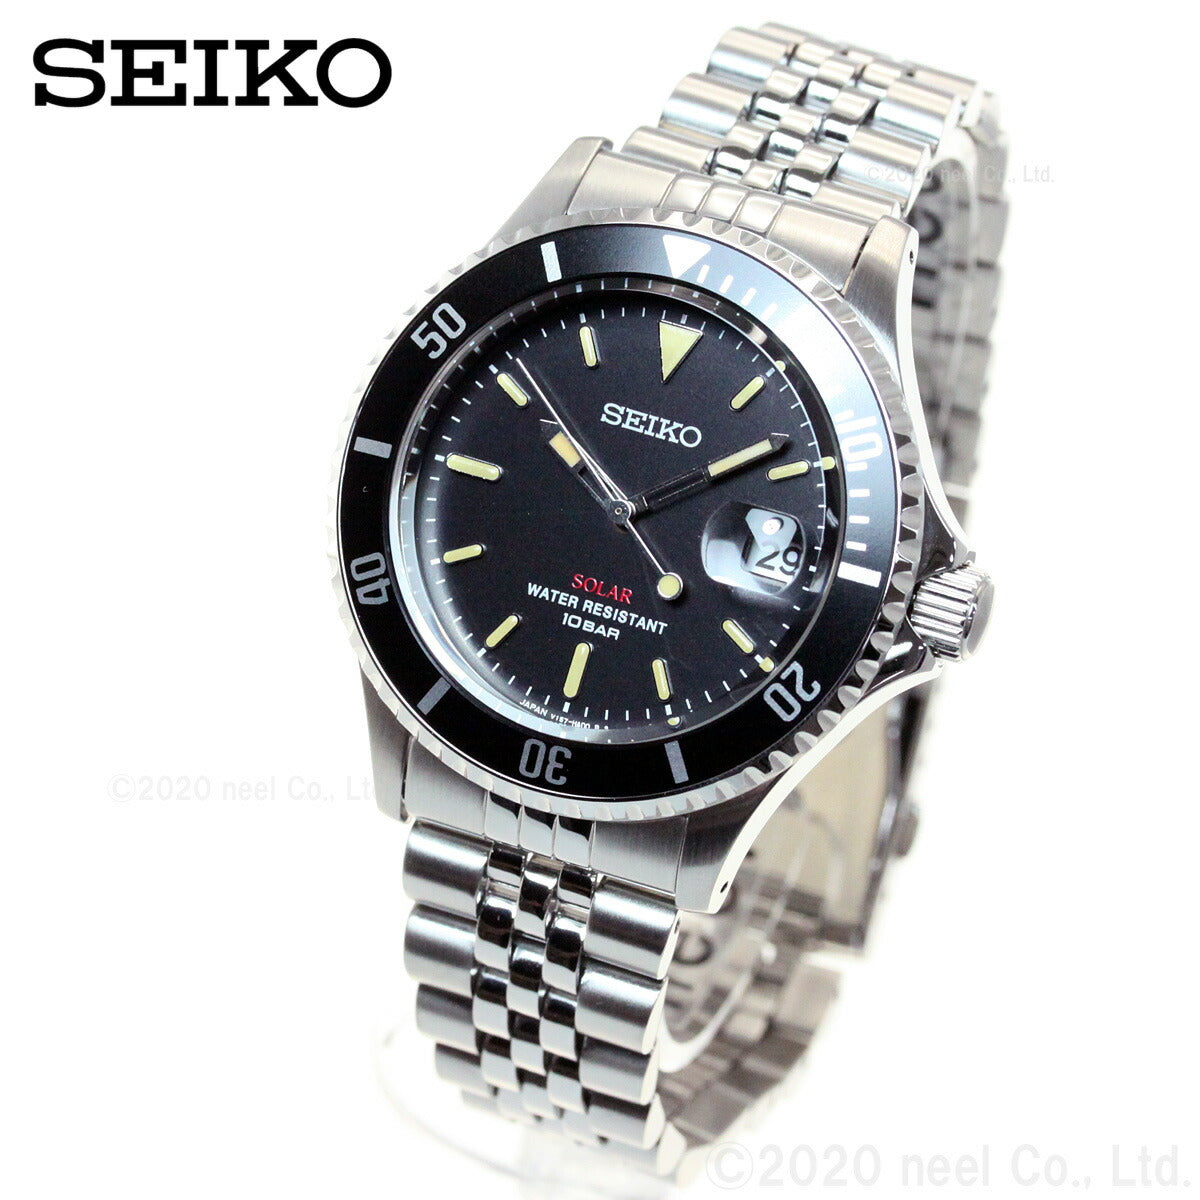 セイコー ソーラー SEIKO SOLAR ショップ限定モデル ヴィンテージデザイン 腕時計 メンズ SZEV012